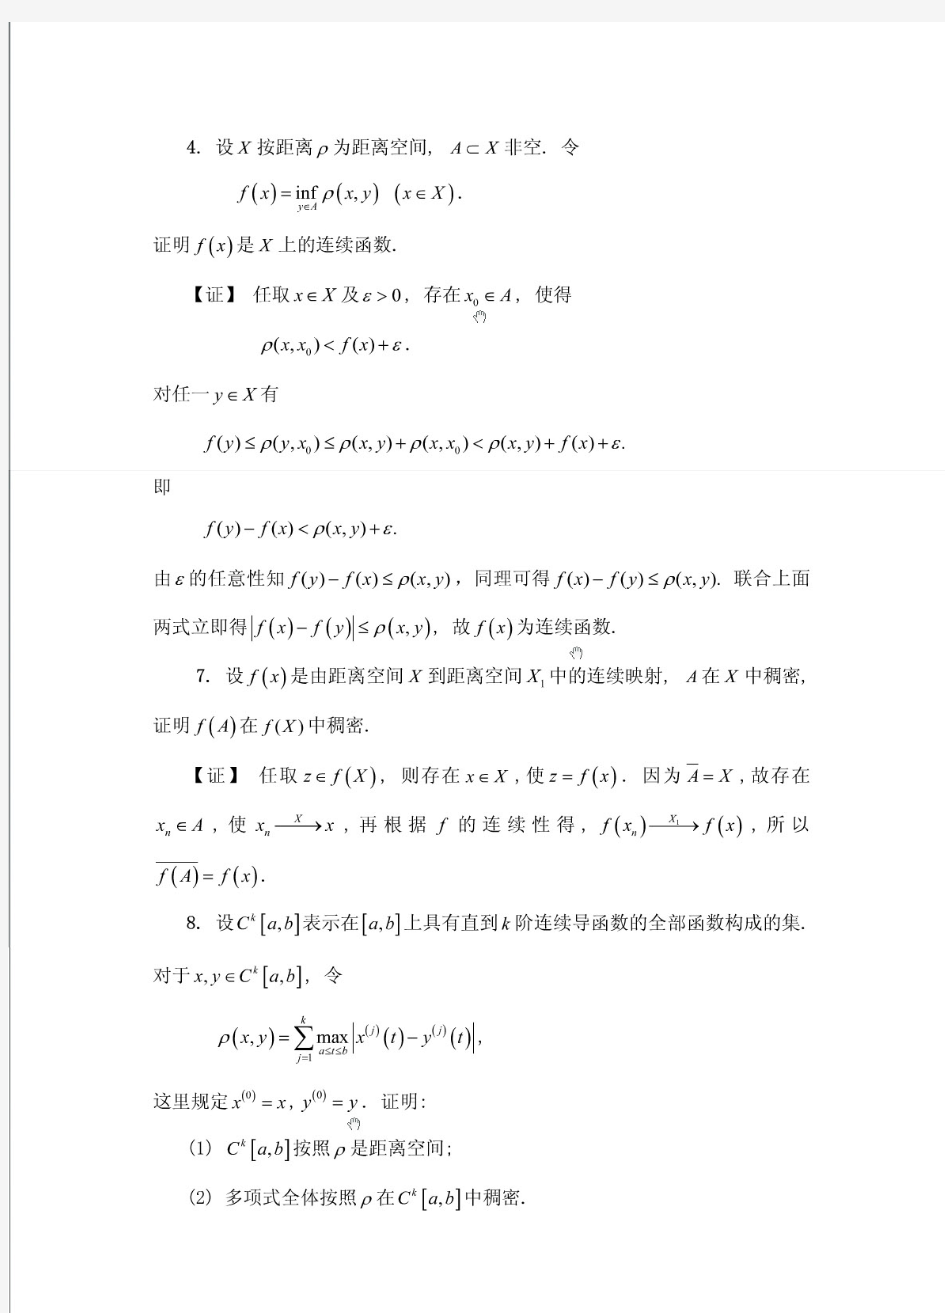 实变函数与泛函分析(郑维行 王声望 )第四版下册课后习题答案(非完整版)